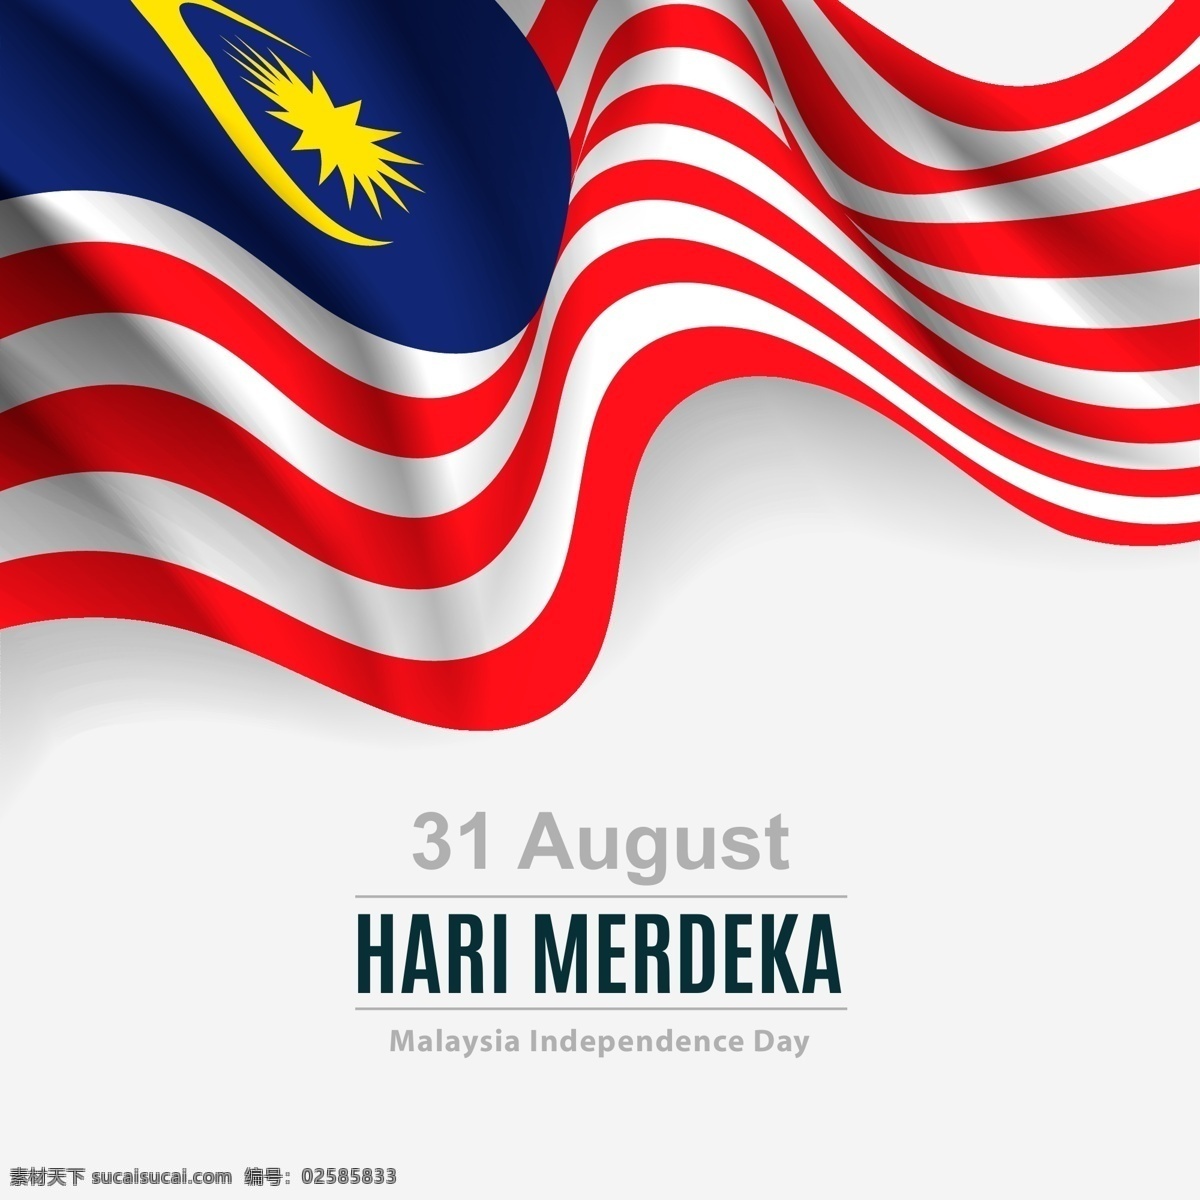 马来西亚 国旗 马来西亚国旗 马来西亚国庆 马来西亚独立 国庆 独立 马来西亚背景 马来西亚海报 共享设计矢量